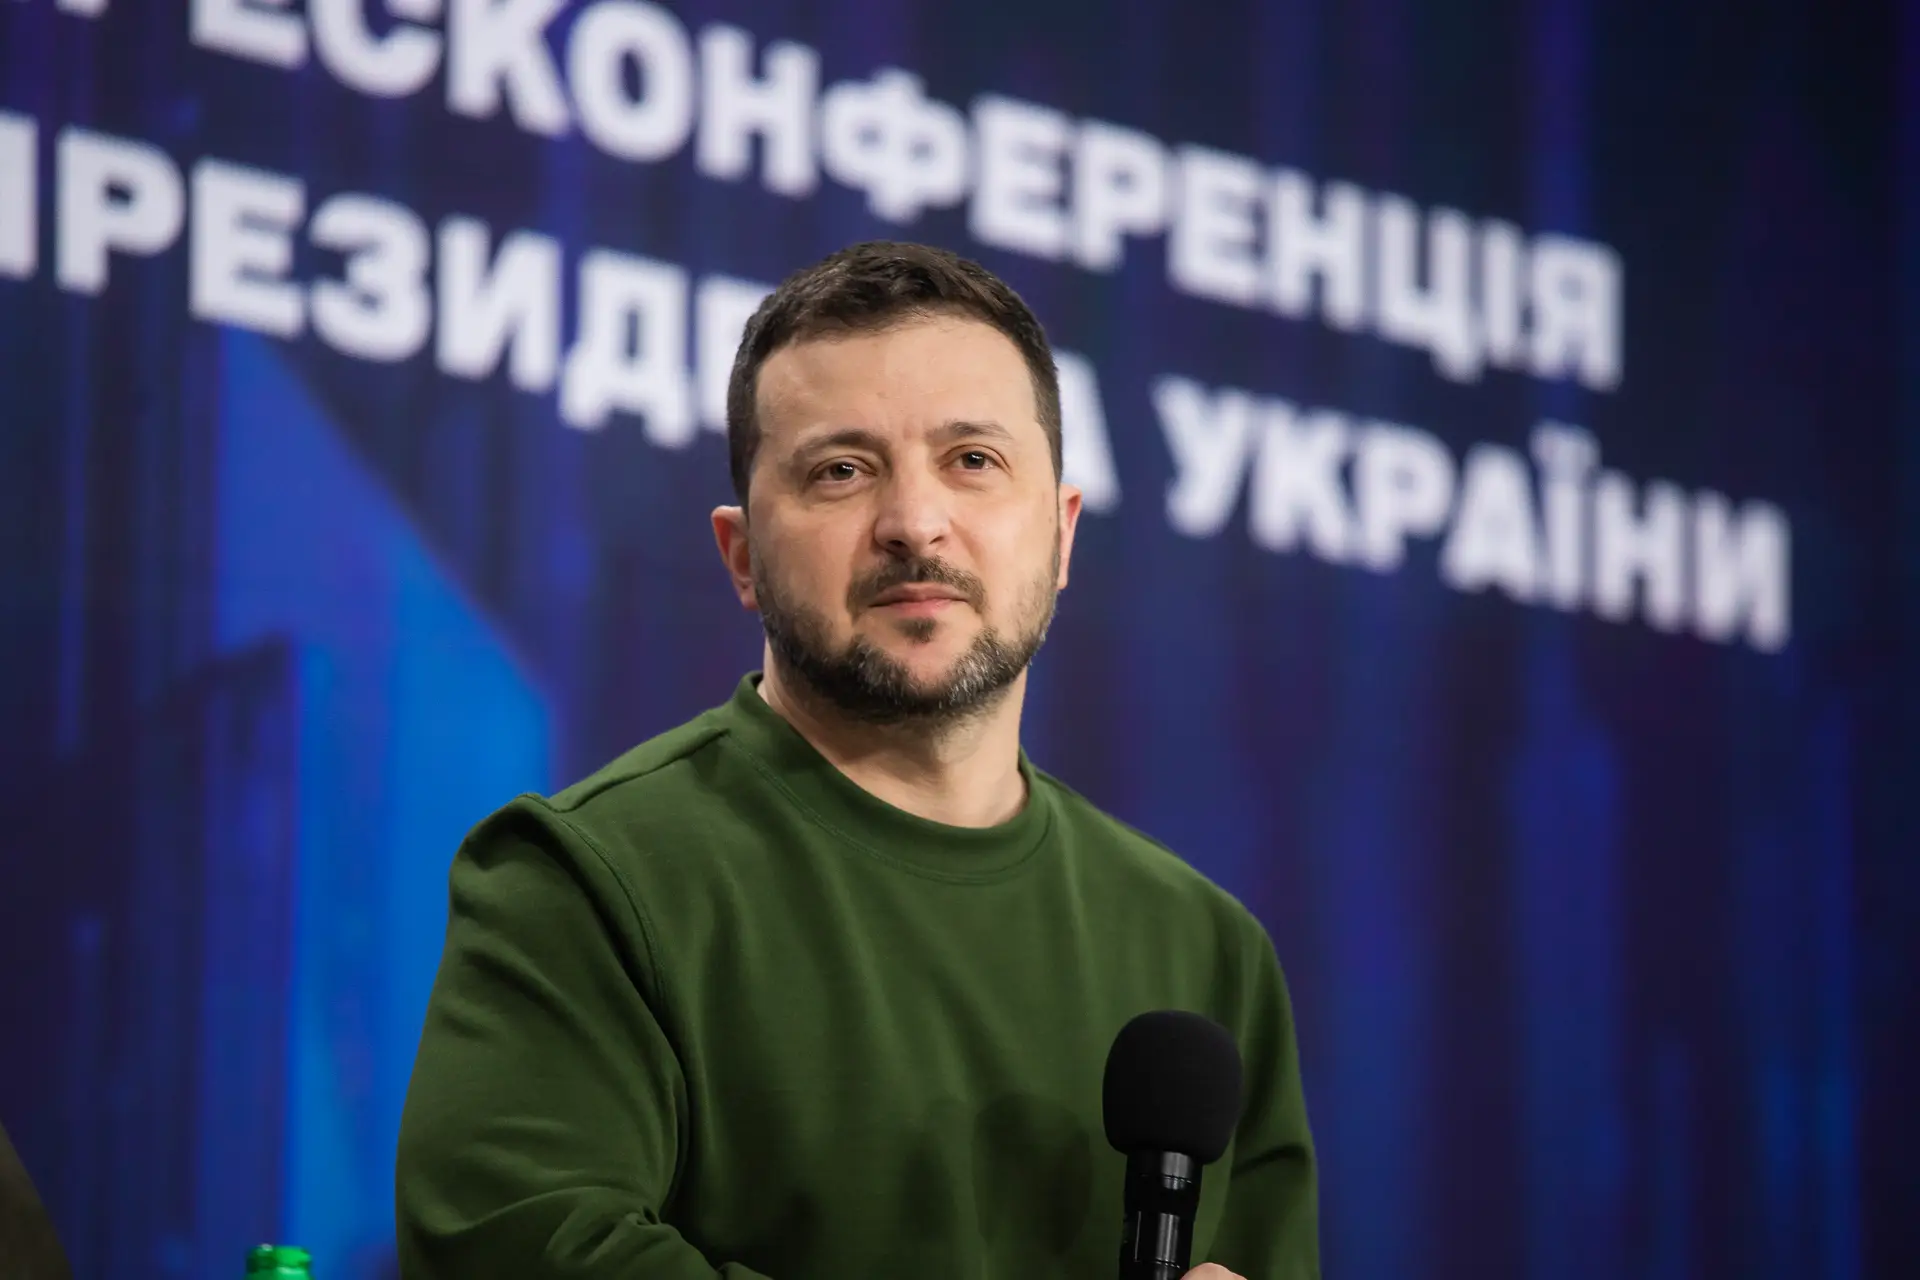 Zelensky promulga controversa lei para mobilizar mais militares ucranianos